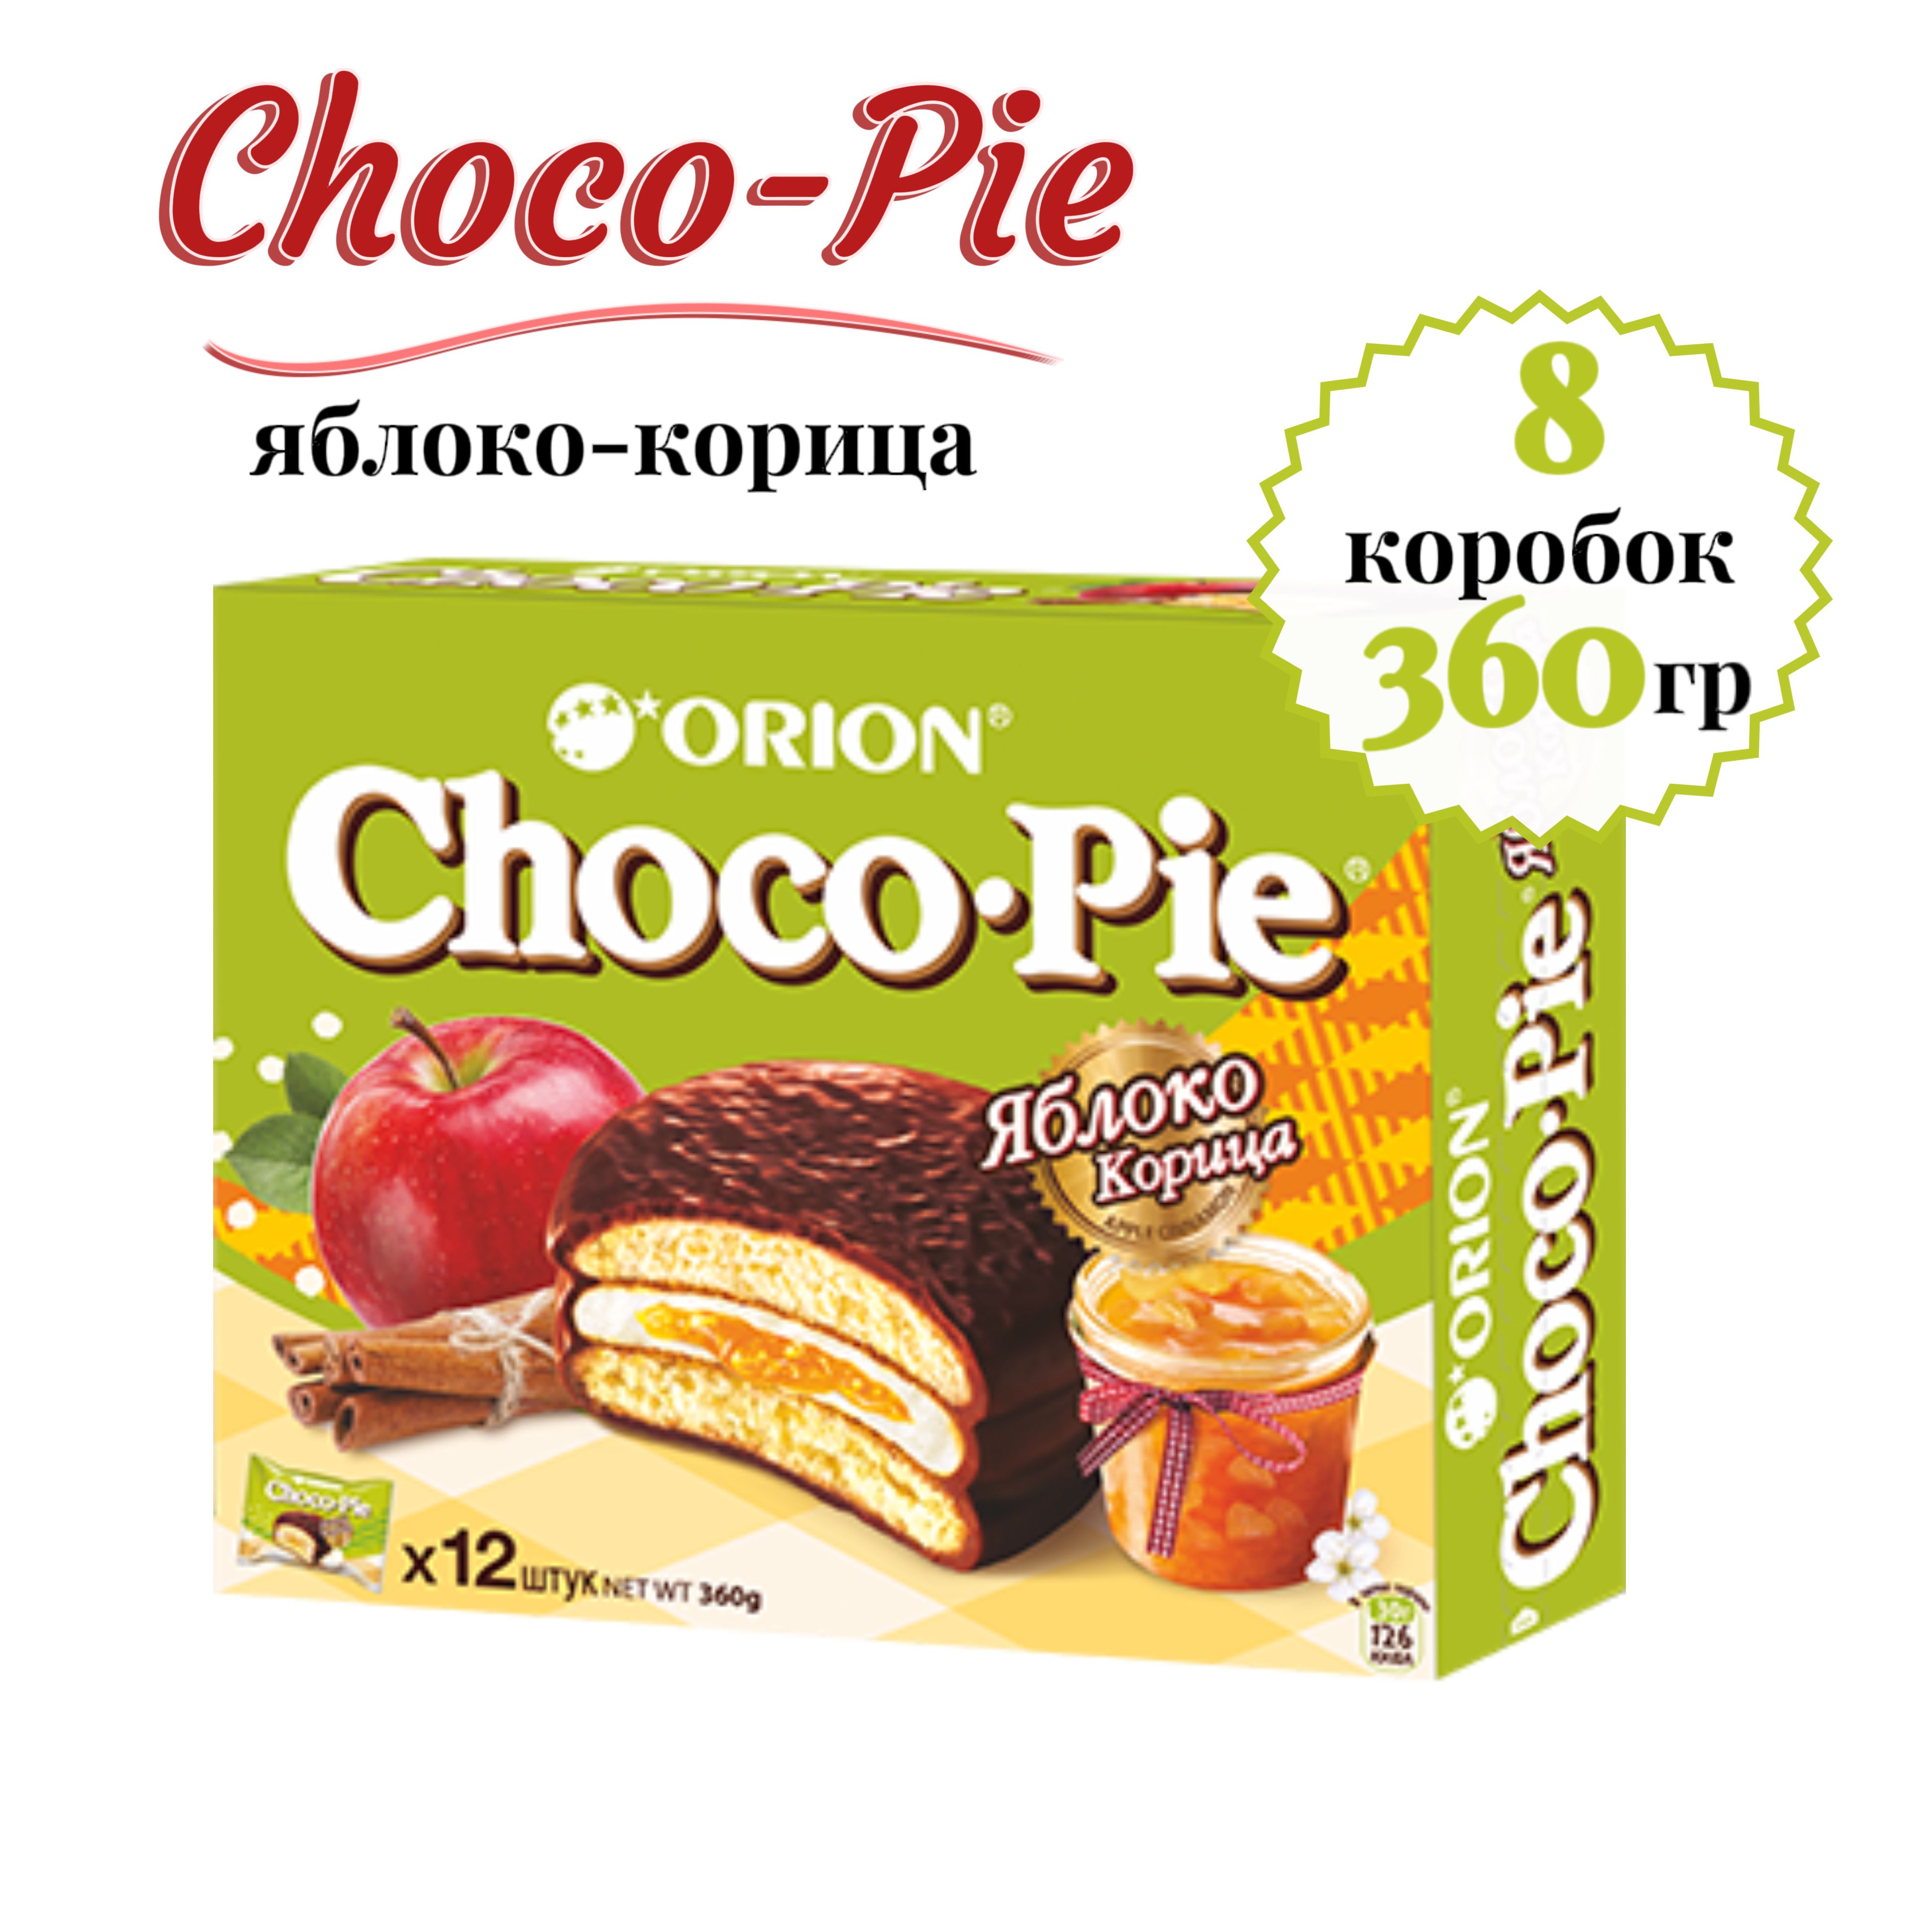 Чоко пай 12 штук. Орион Чоко Пай 360г. Orion Choco pie печенье яблоко корица 12шт 360г. Печенье Орион Чоко Пай. «Орион» Чоко Пай 12 шт.